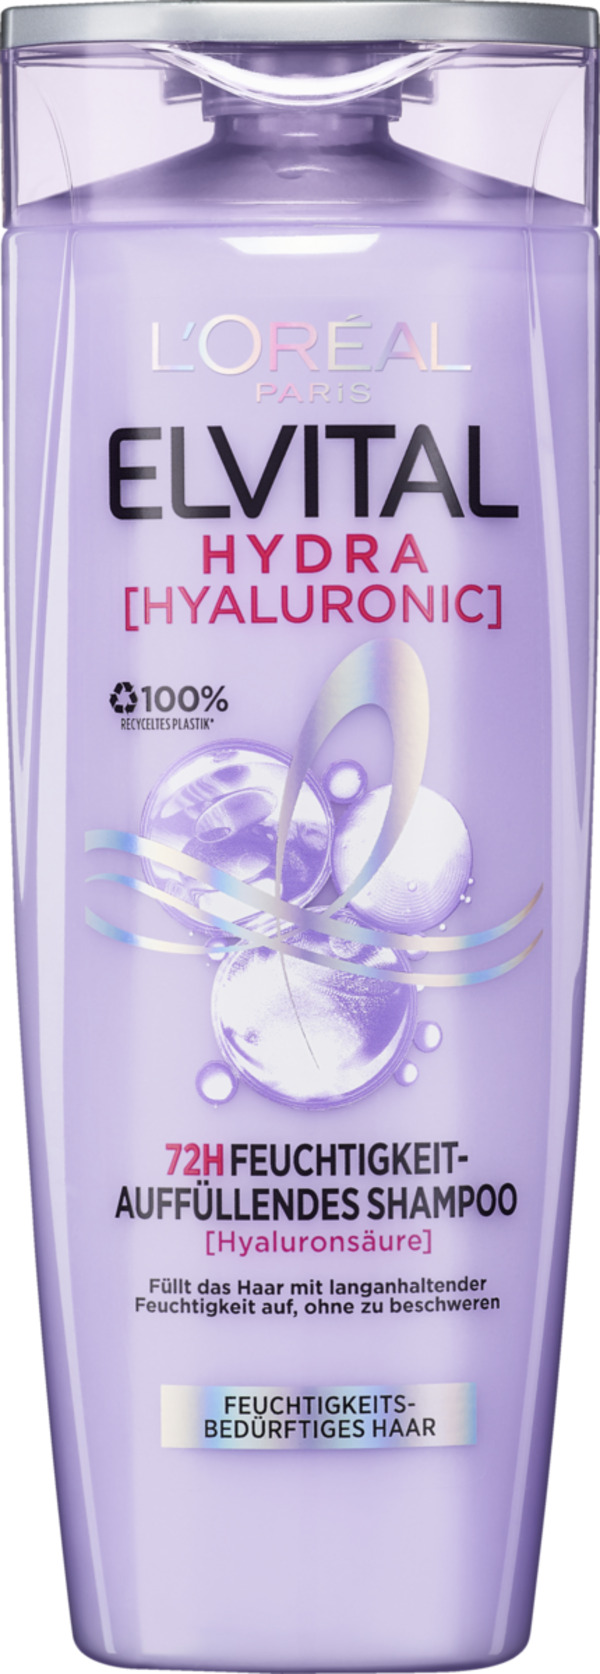 Bild 1 von L’Oréal Paris Elvital Hydra HYALURONIC 72H Feuchtigkeits-Auffüllendes Shampoo